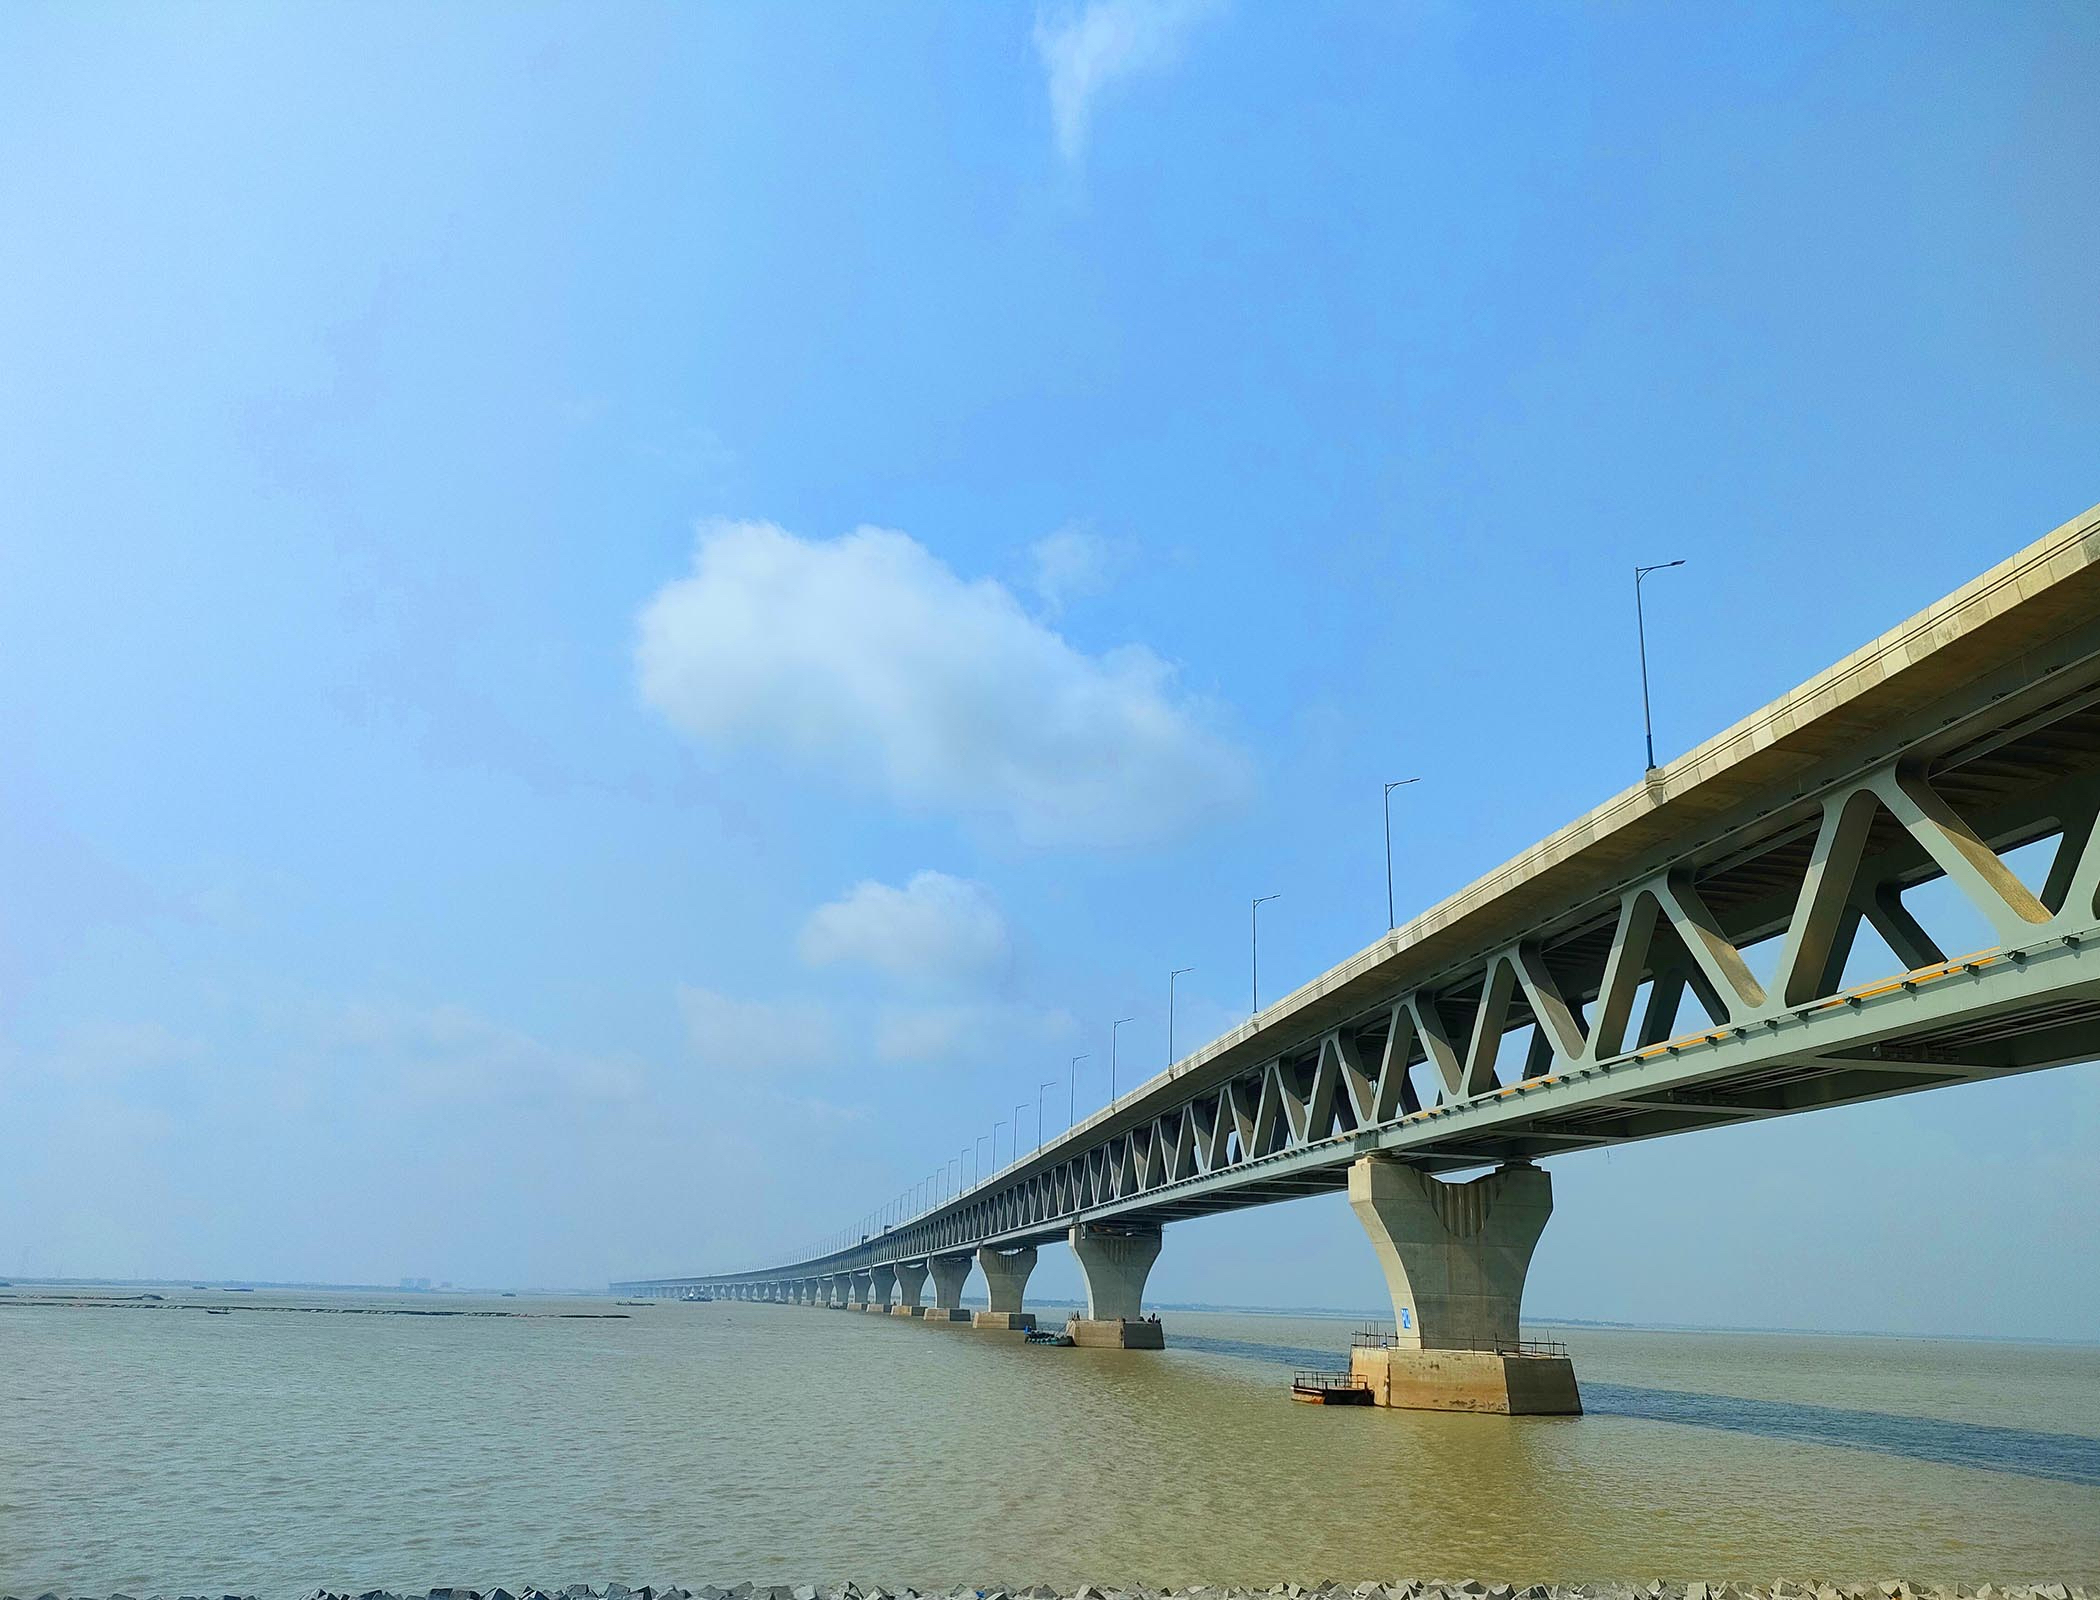 The measure of: Padma Multipurpose Bridge, Bangladesh